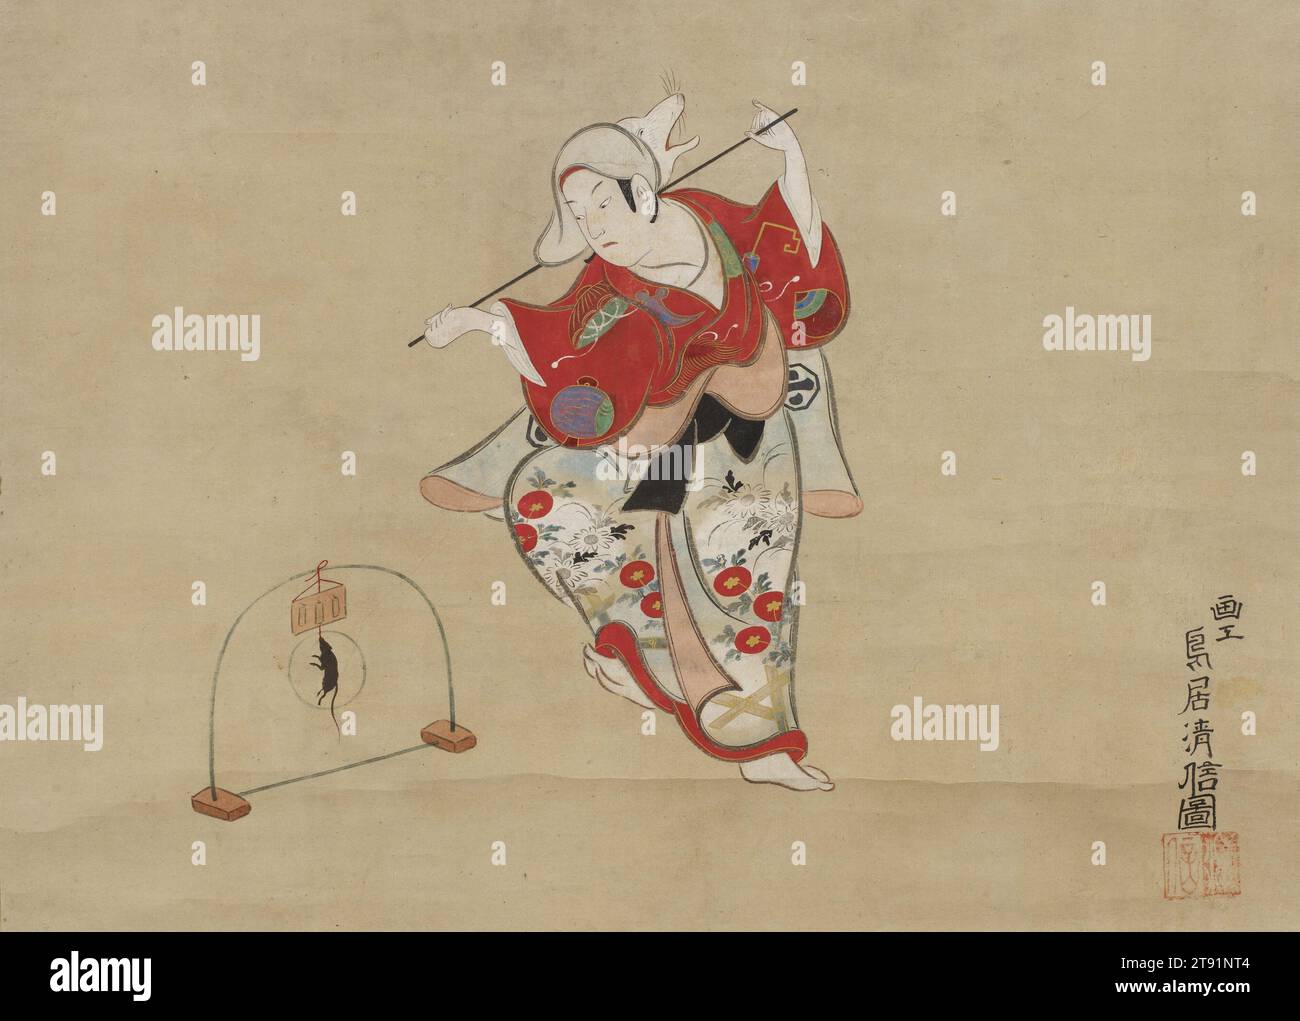 Acteur Arashi Sangorō I interprétant la danse 'Catching the Fox', c. 1726, Torii Kiyonobu, Japonais, 1664 - 1729, 12 5/8 x 17 3/8 po (32 x 44,2 cm) (image)46 3/4 x 23 1/16 pouces (118,7 x 58,5 cm) (monture) W 64 cm avec rouleau, rouleau suspendu ; encre et couleur sur papier, Japon, Nikuhitsu ukiyo-e, Kiyonobu représente le célèbre acteur Arashi Sangorō I (1687-1739) dans la pièce Tsurigitsune (attraper le renard). Dans les histoires japonaises traditionnelles, les renards sont capables de se transformer en forme humaine pour tromper les humains sans méfiance. Selon cette histoire, un vieux renard se transforme en prêtre pour échapper à la chasse. Banque D'Images